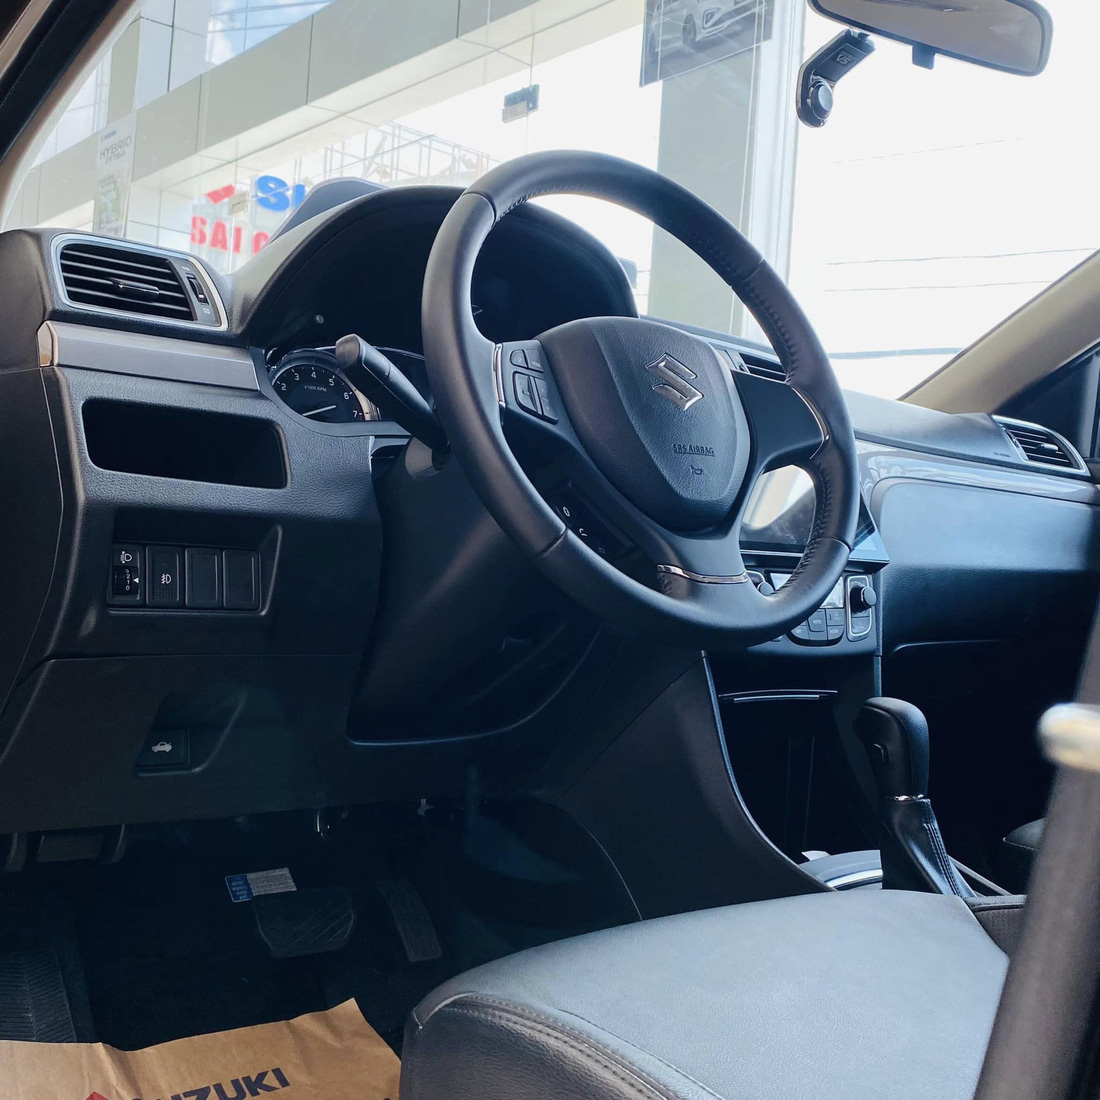 Bên trong, xe có màn hình Android 9 inch kết hợp camera hành trình trước/sau của Vietmap được gắn sẵn. Camera hành trình này được tích hợp các tính năng cảnh báo lệch làn, nhắc nhở xe phía trước di chuyển, cảnh báo giao thông hay khoảng cách tới xe phía trước - Ảnh: Đại lý Suzuki/Facebook